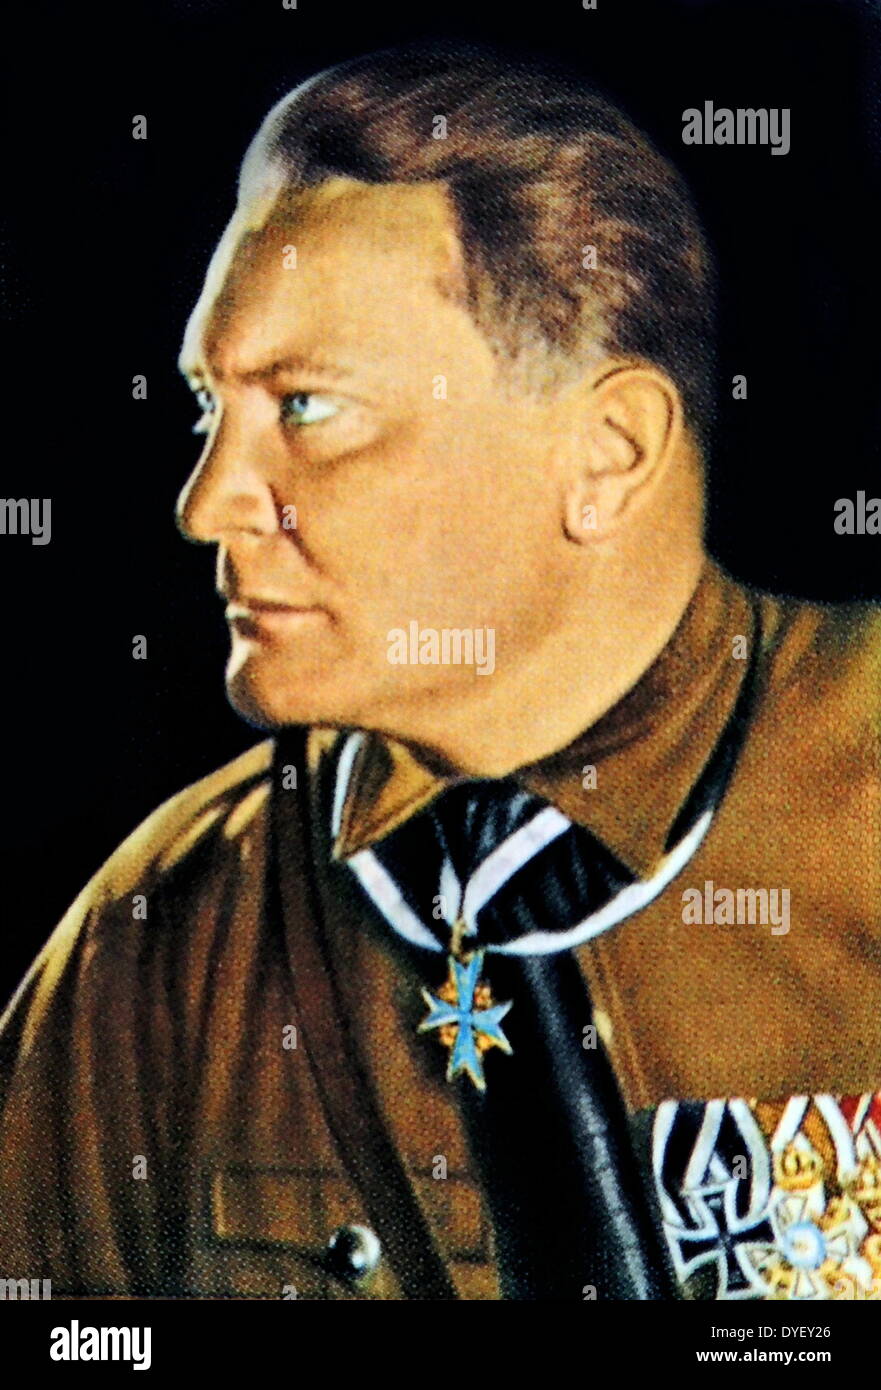 Hermann Göring, commandant en chef de la Luftwaffe, président du Reichstag, Premier Ministre de Prusse, plénipotentiaire pour la mise en Œuvre de la période de quatre ans (économique), Plan et successeur désigné de Hitler.circa 1933 Banque D'Images